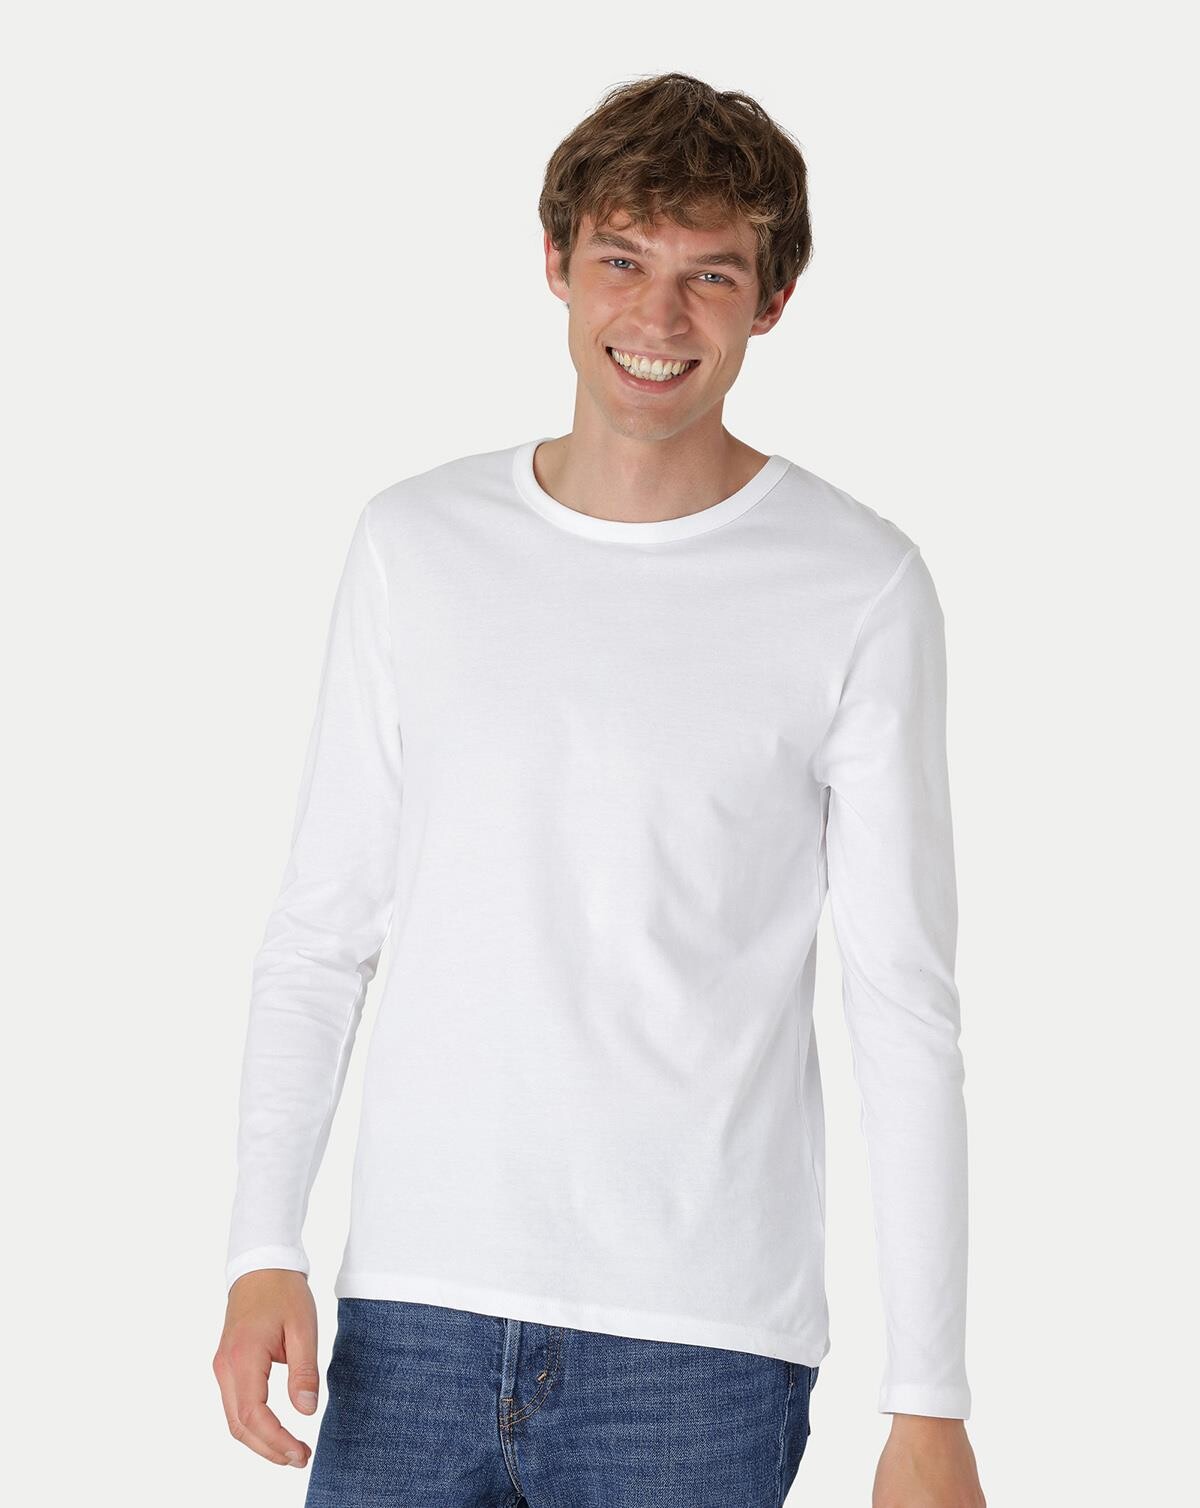 Neutral Økologisk Langærmet T-shirt (Hvid, 3XL)